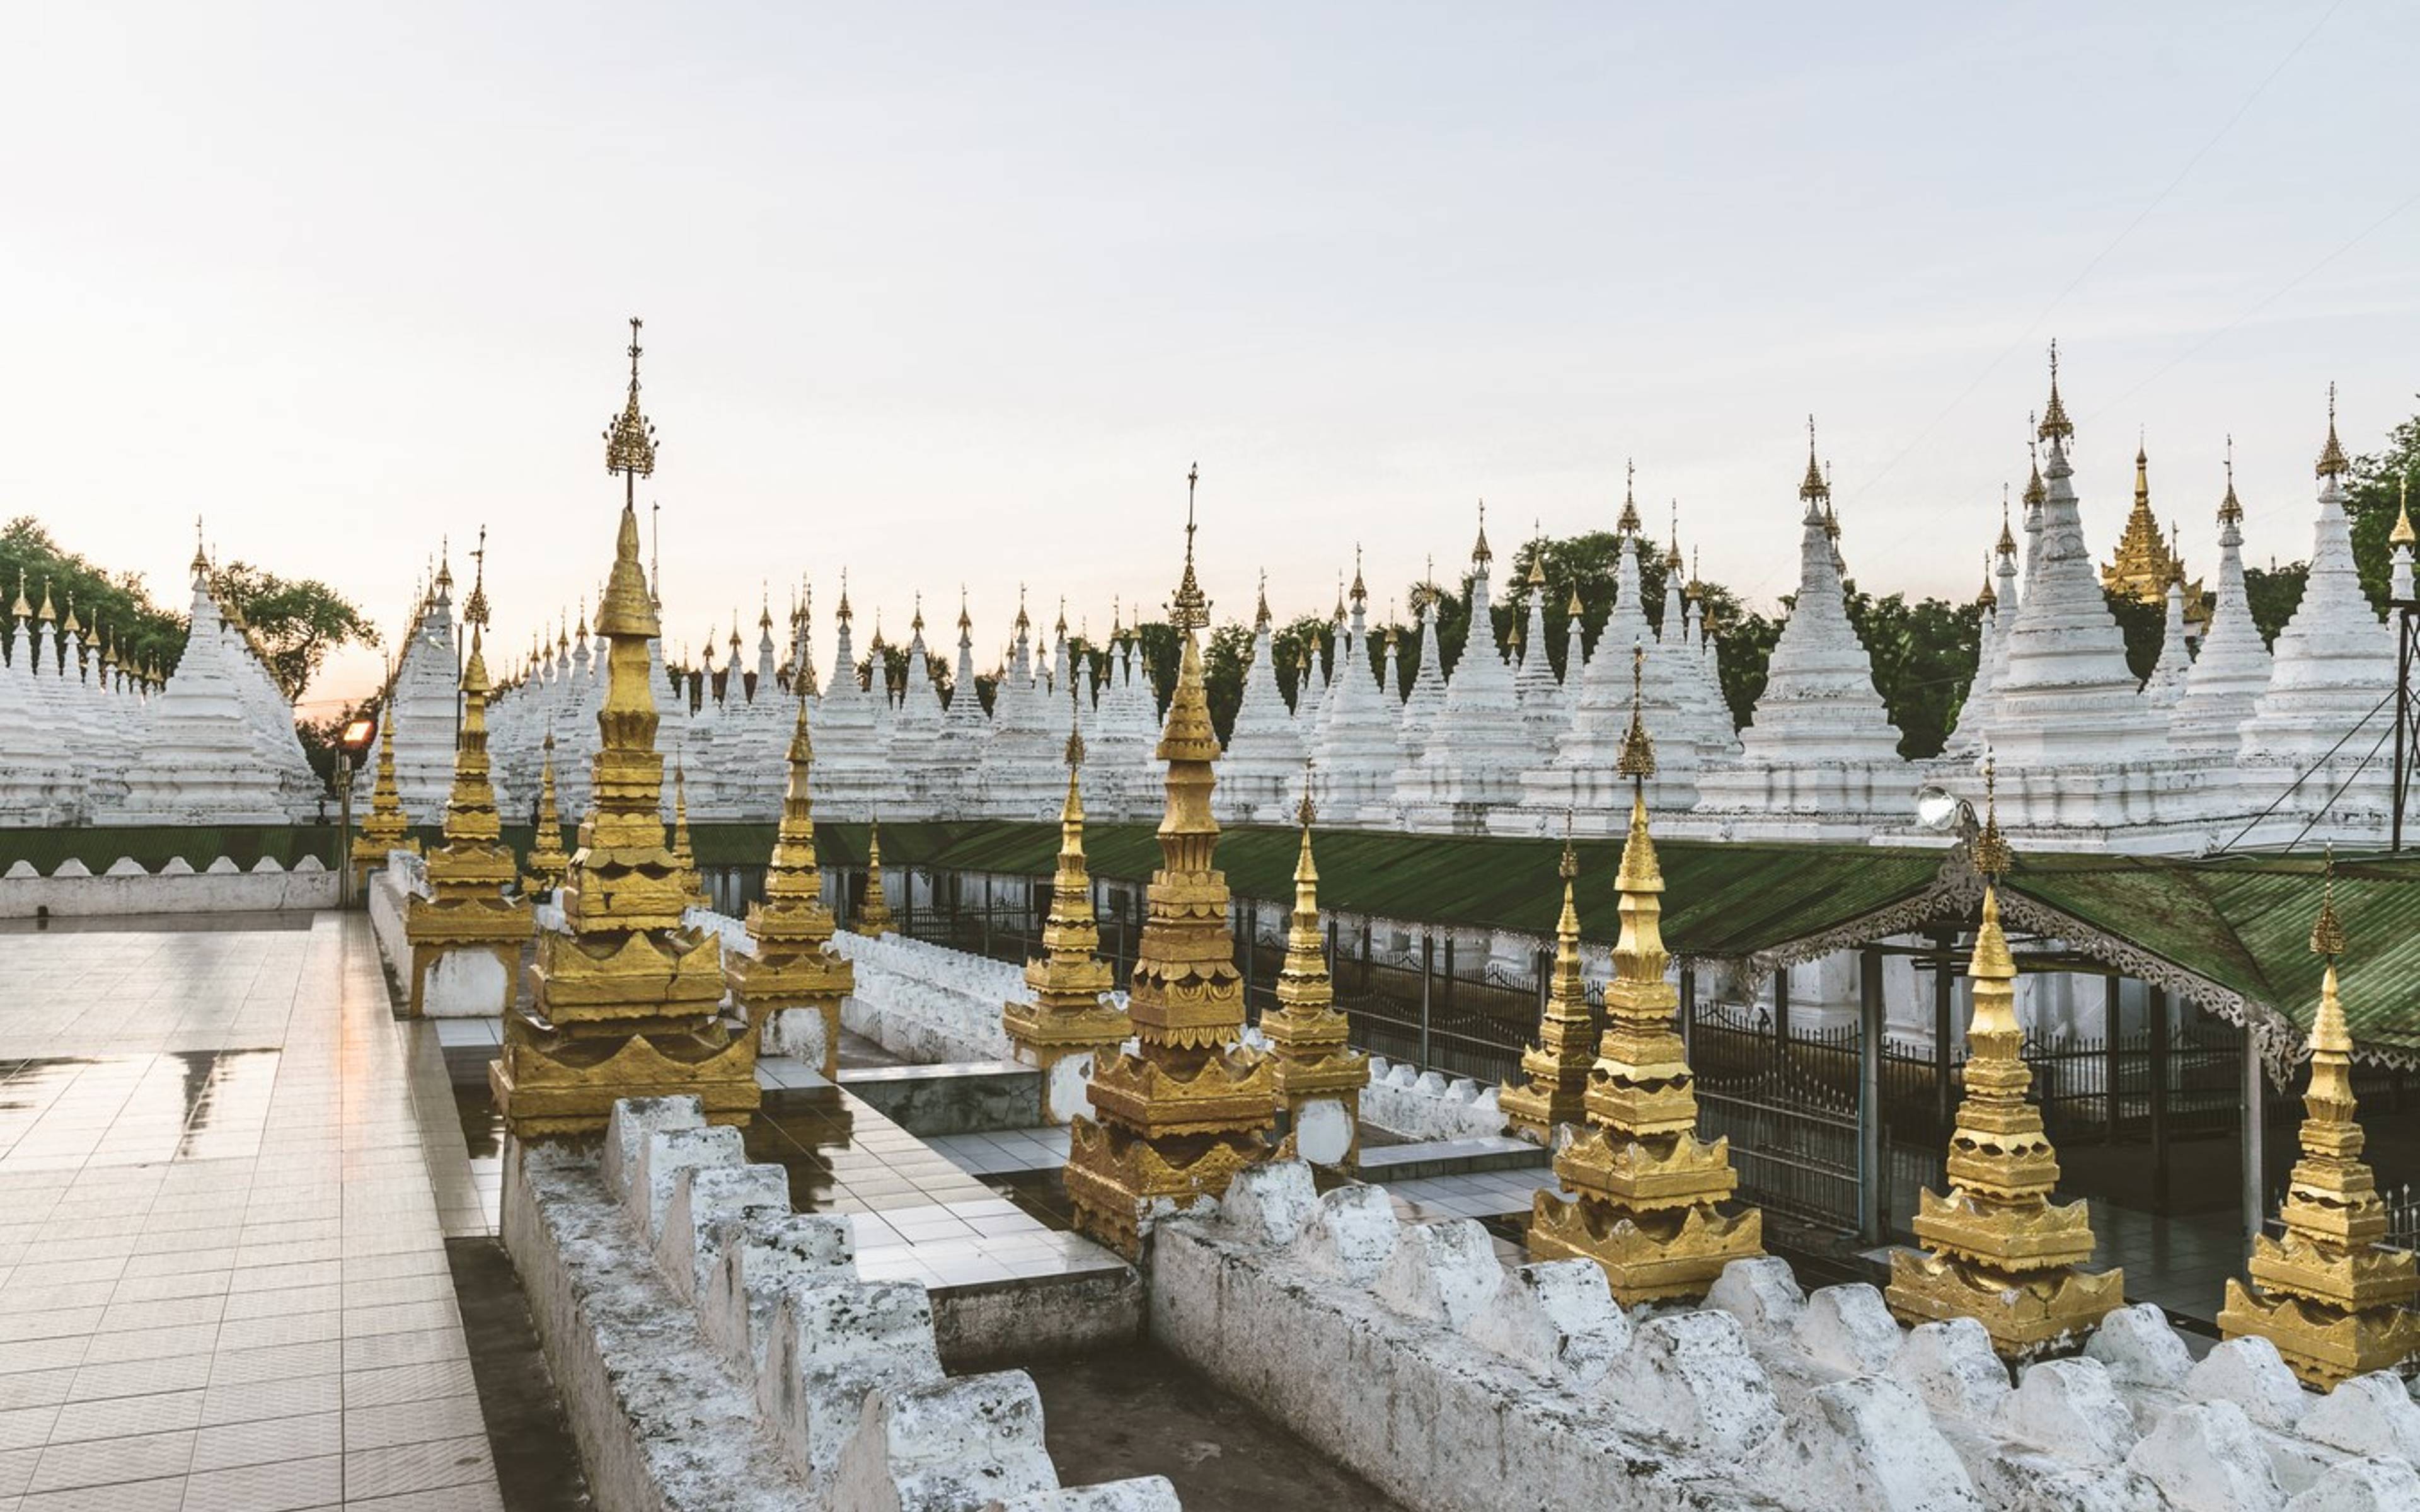 Mandalay, visita del monasterio de Mahagandayon 